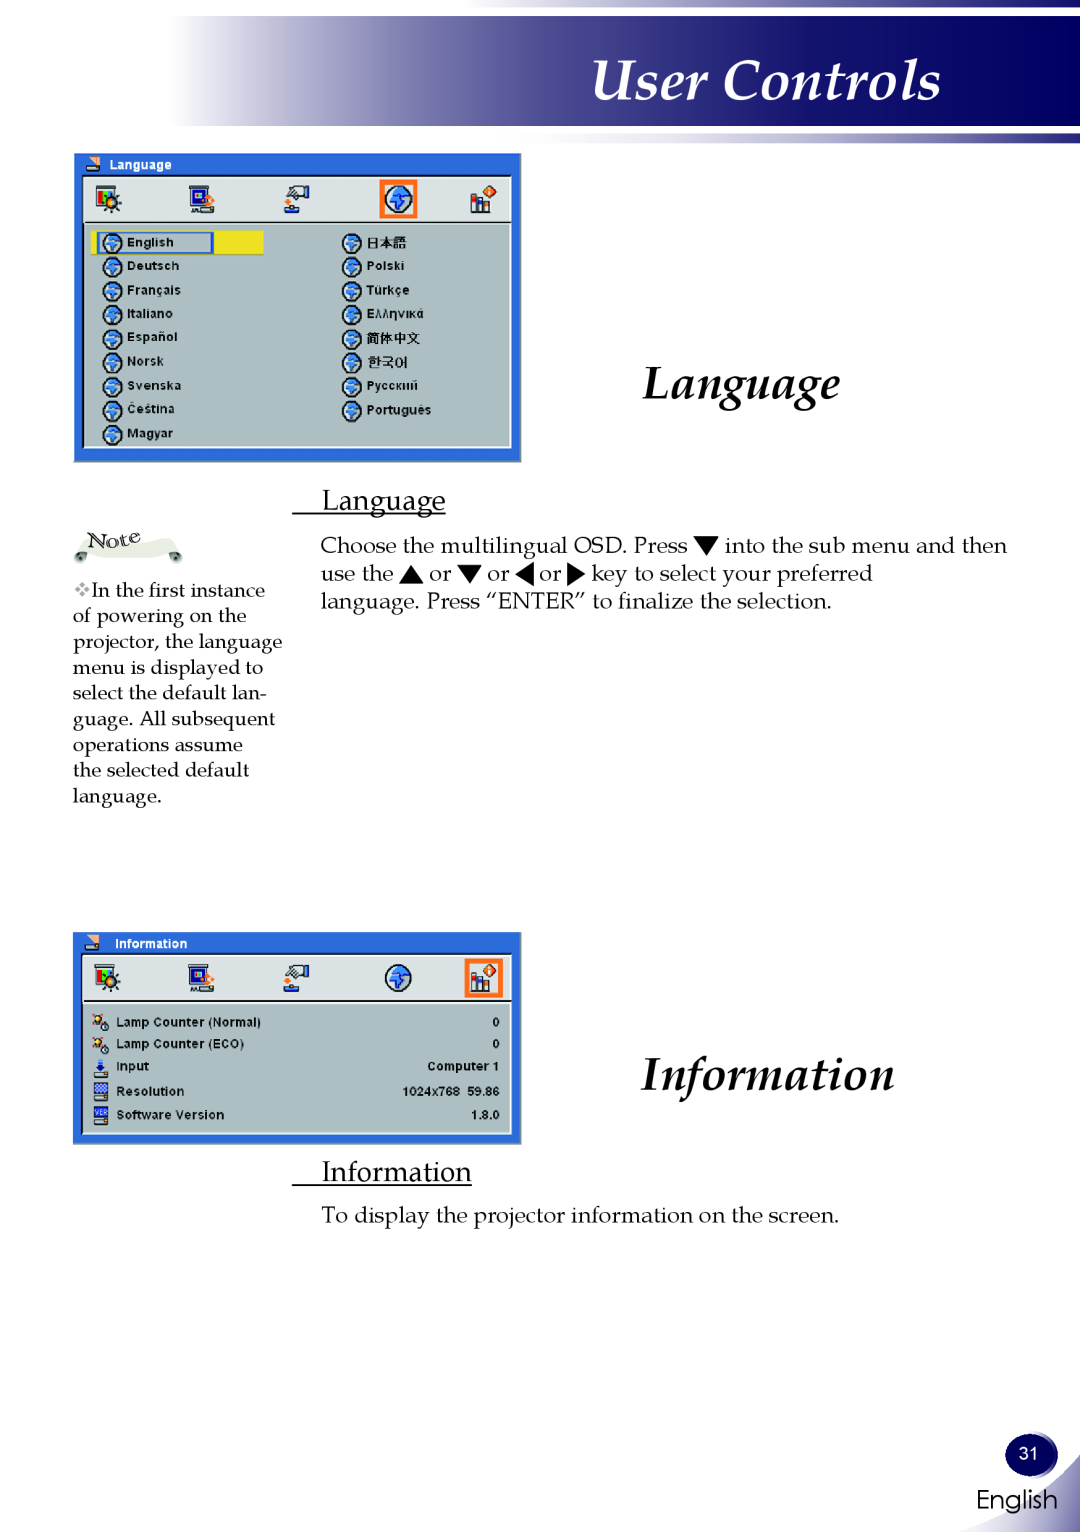 Sanyo PDG-DXL100 owner manual Language, Information, User Controls, English 